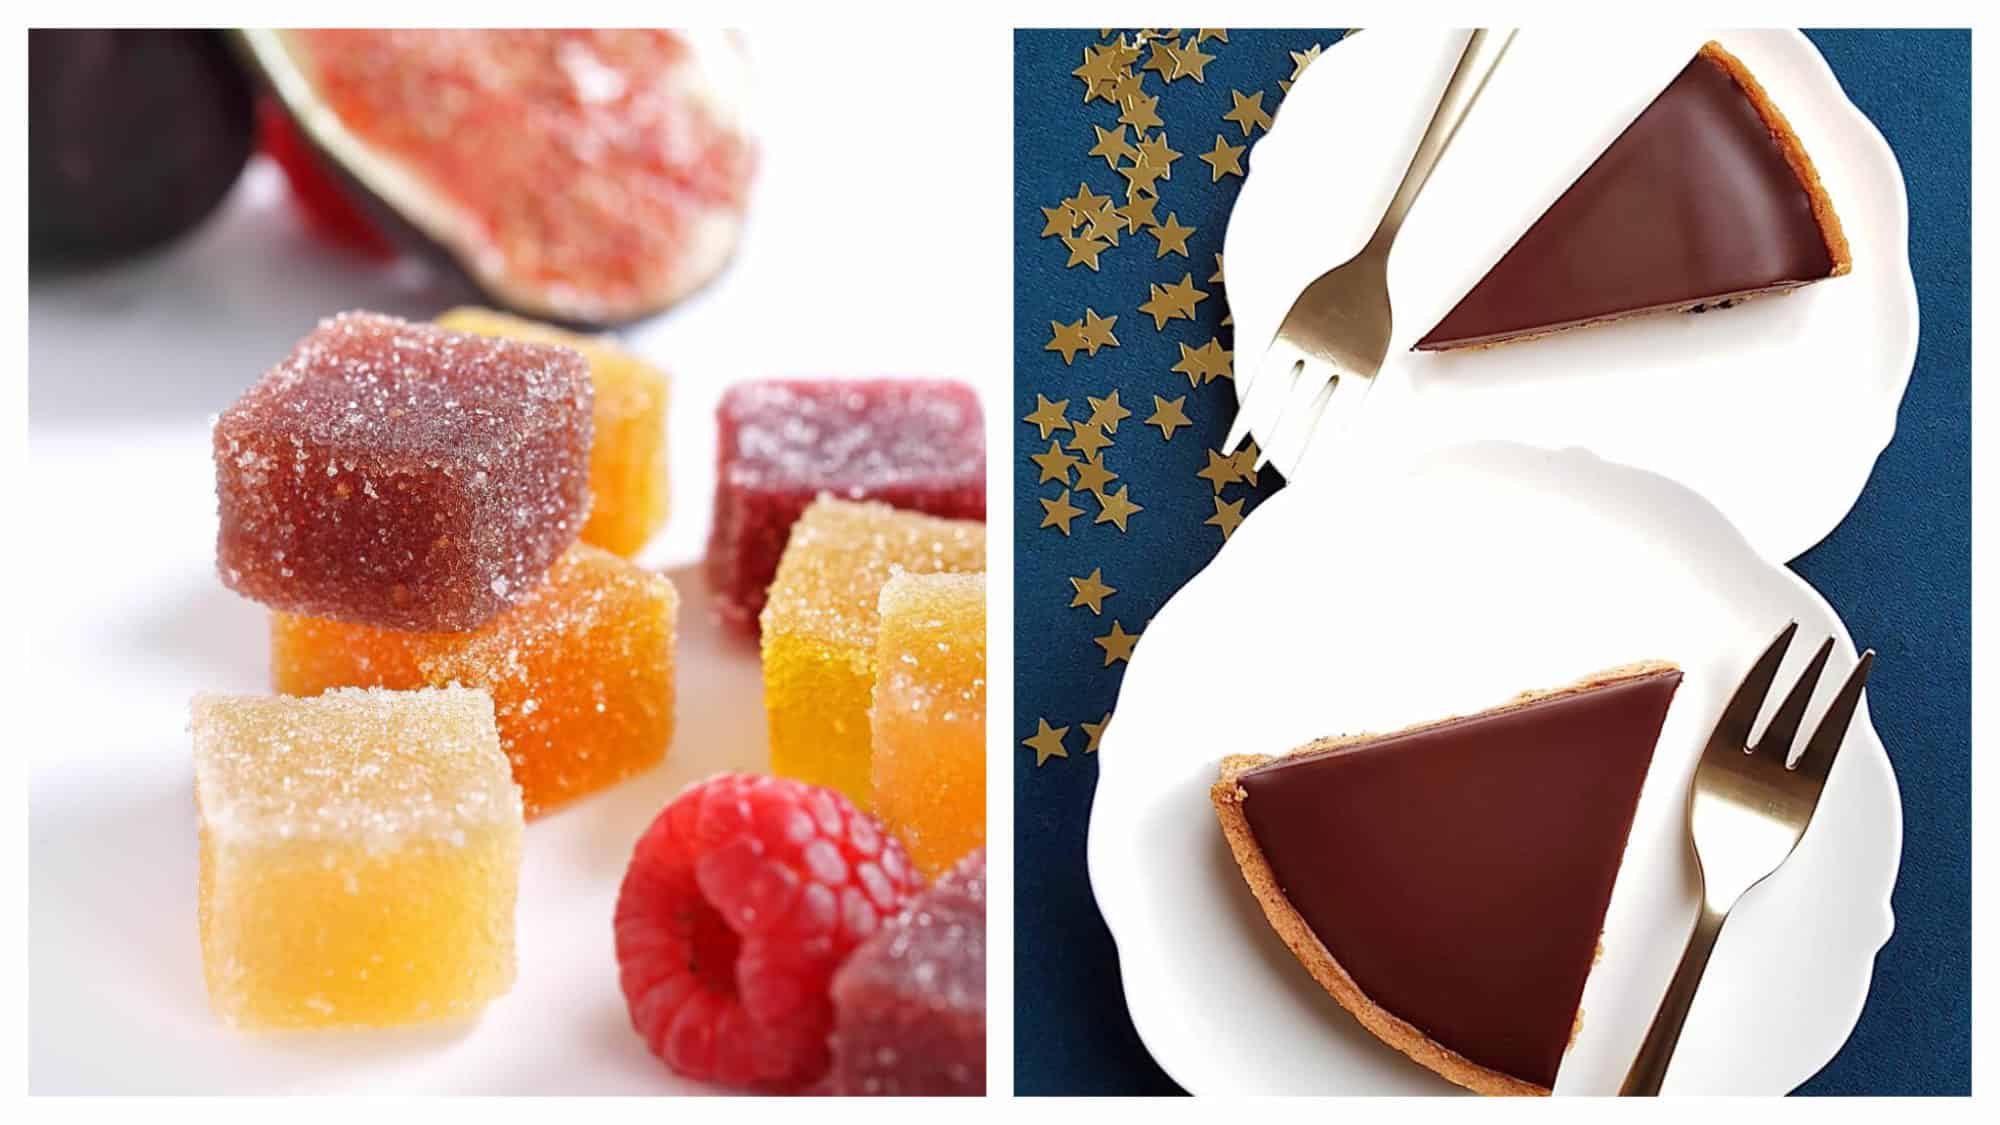 Left: Chocolaterie Online's fruit pastille's
Right: La Maison du Chocolat's tarte au chocolat 